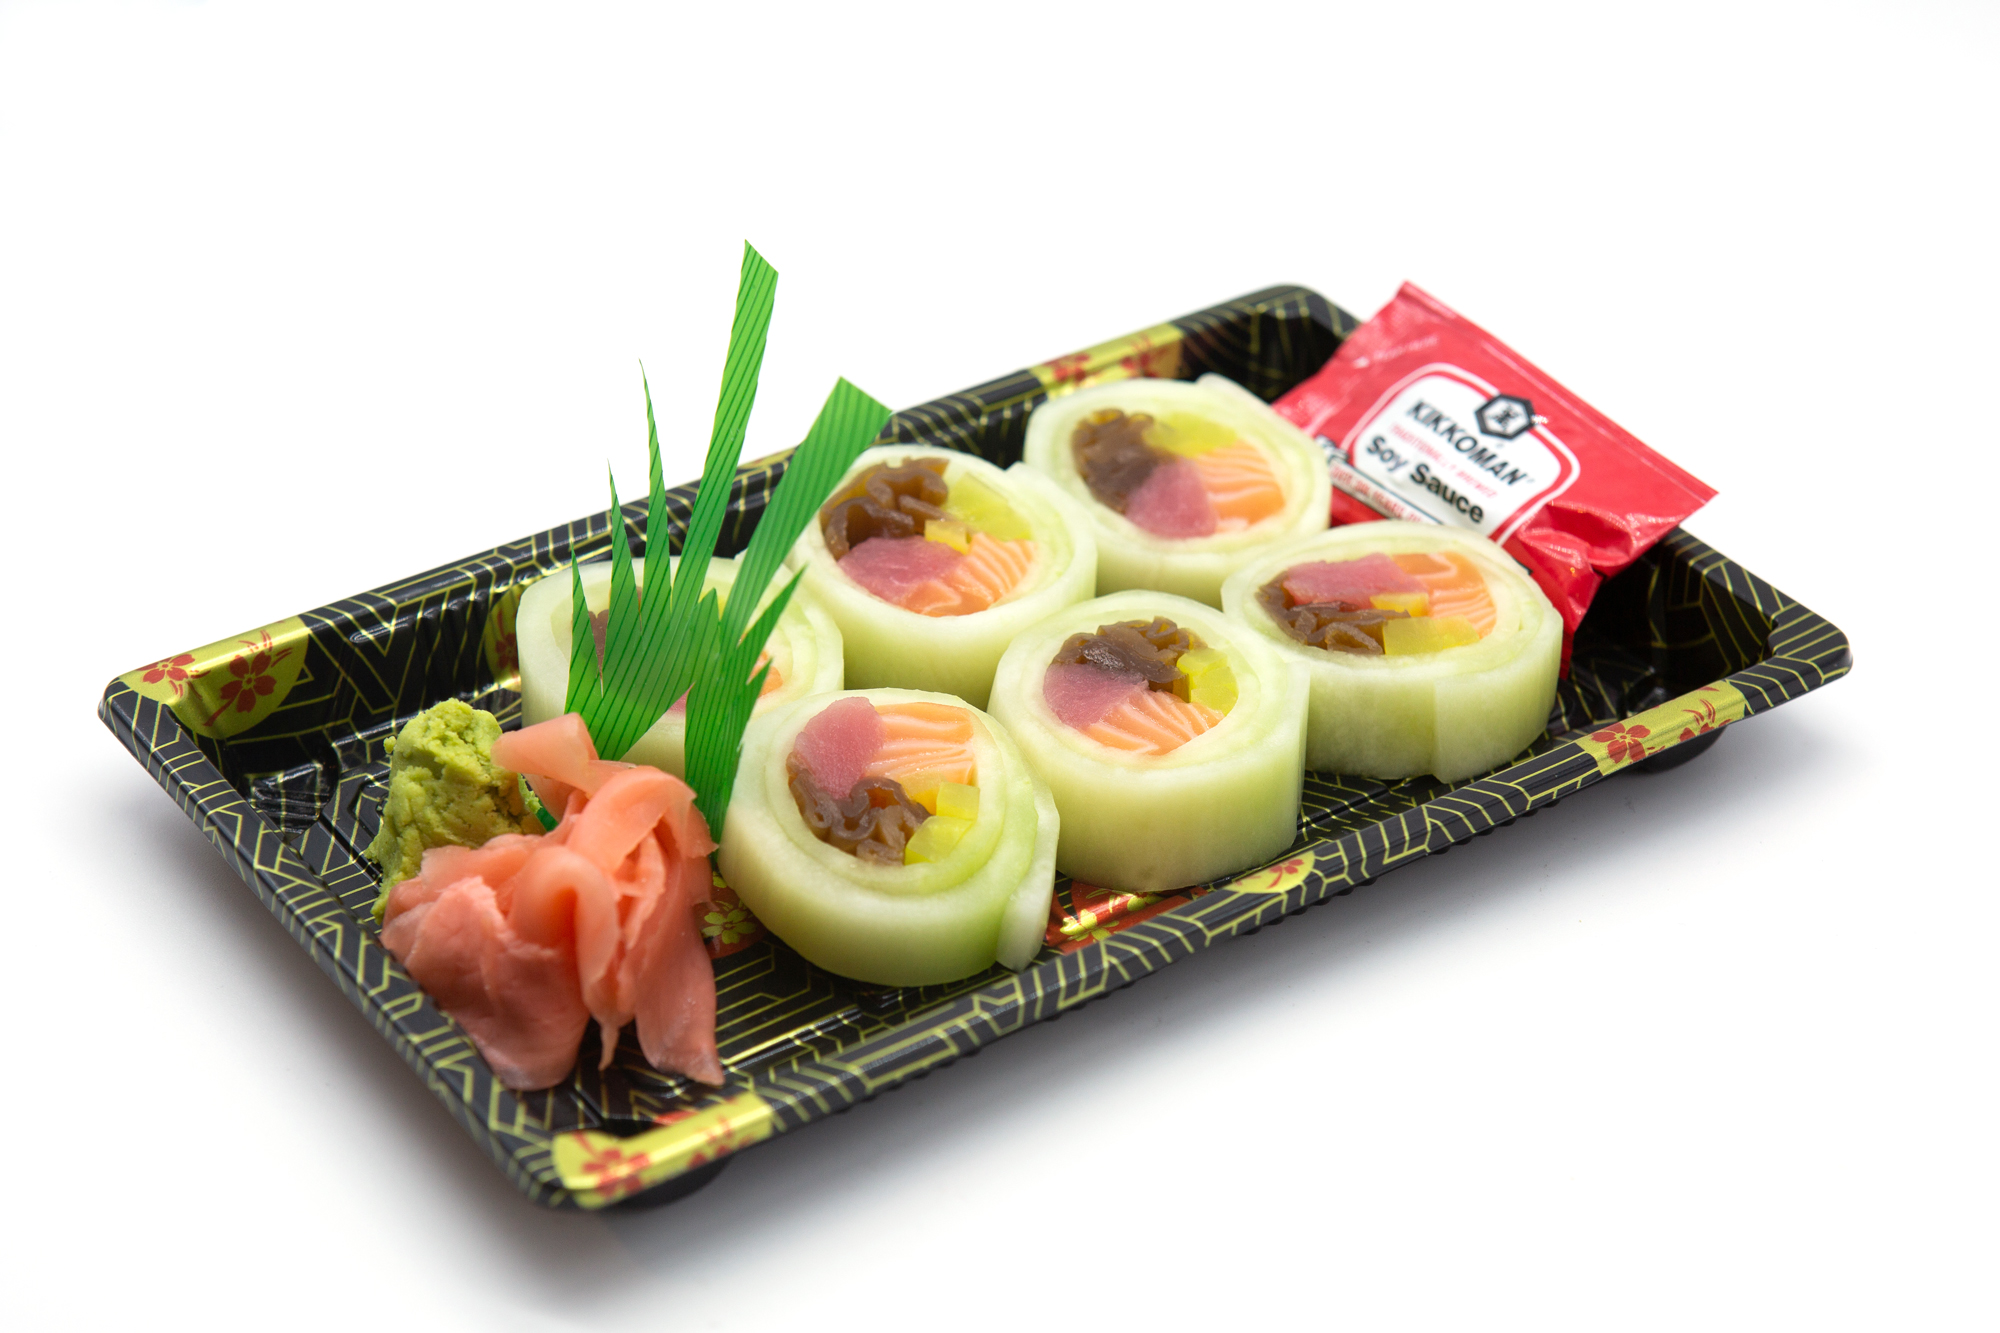 Ichiban Mikoshi Sushi